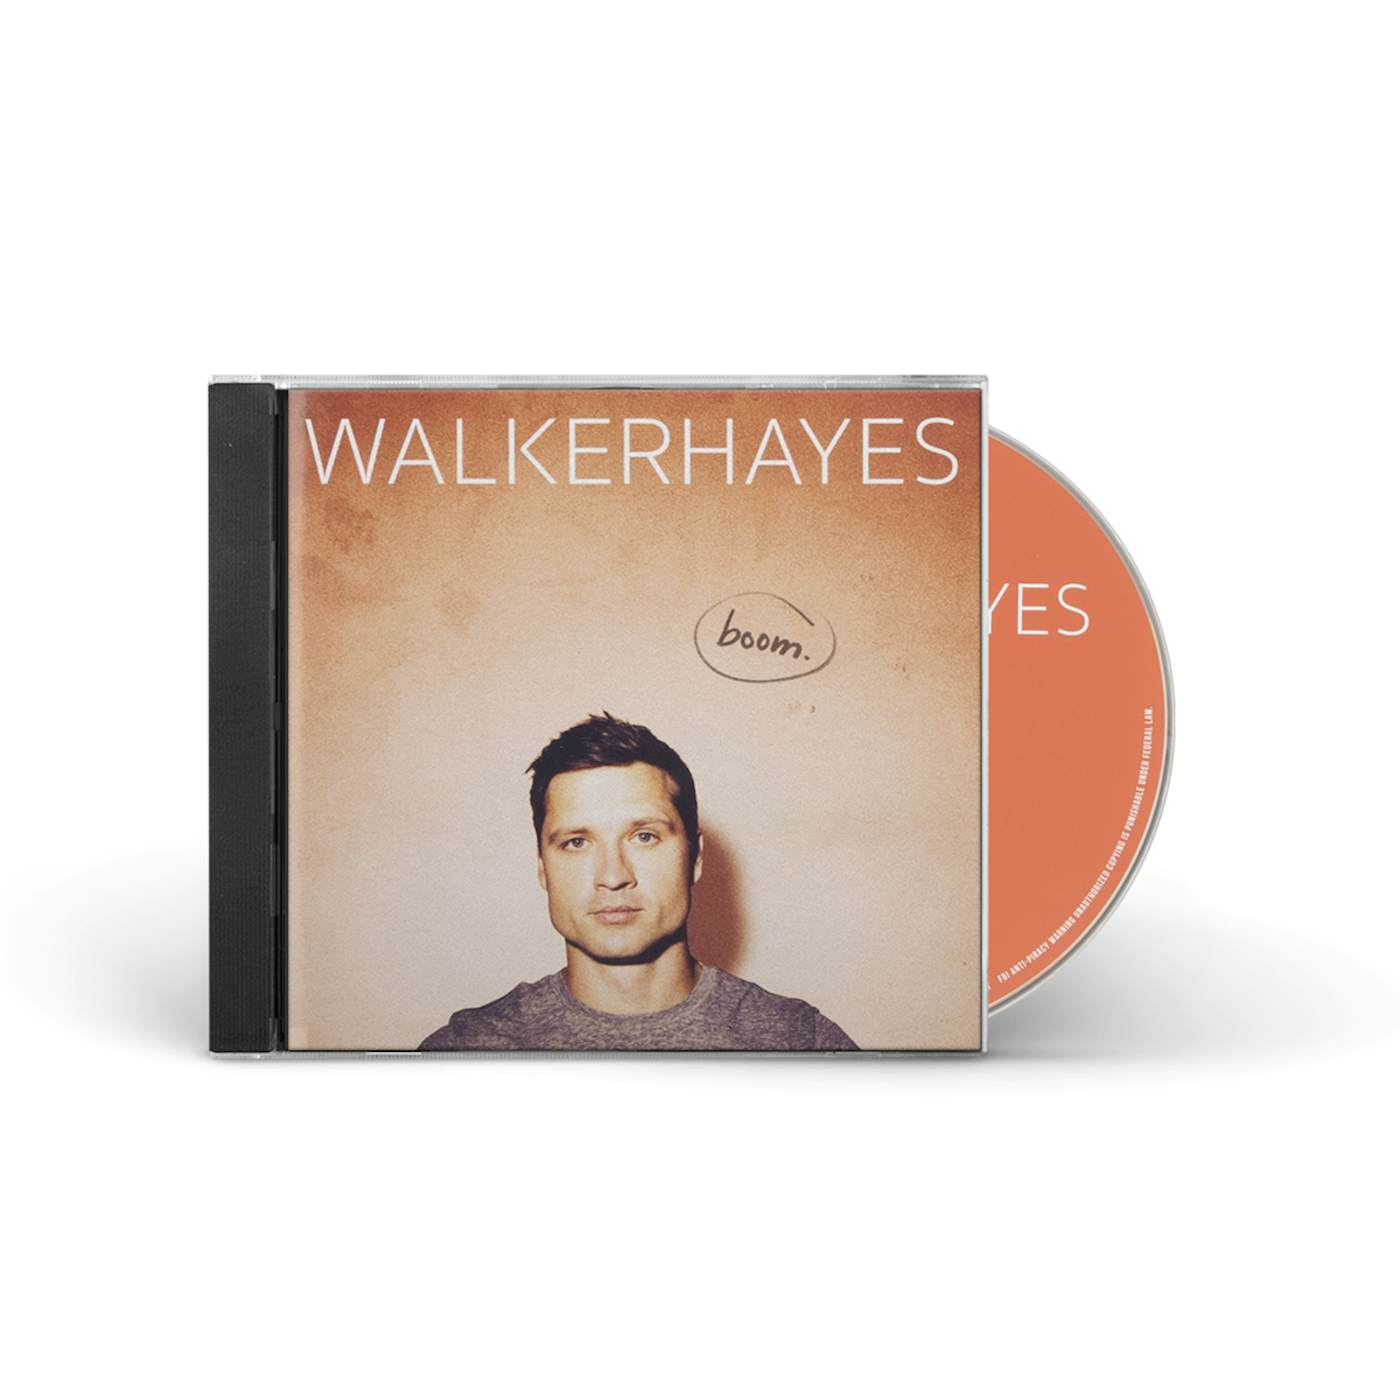 Walker Hayes boom. CD